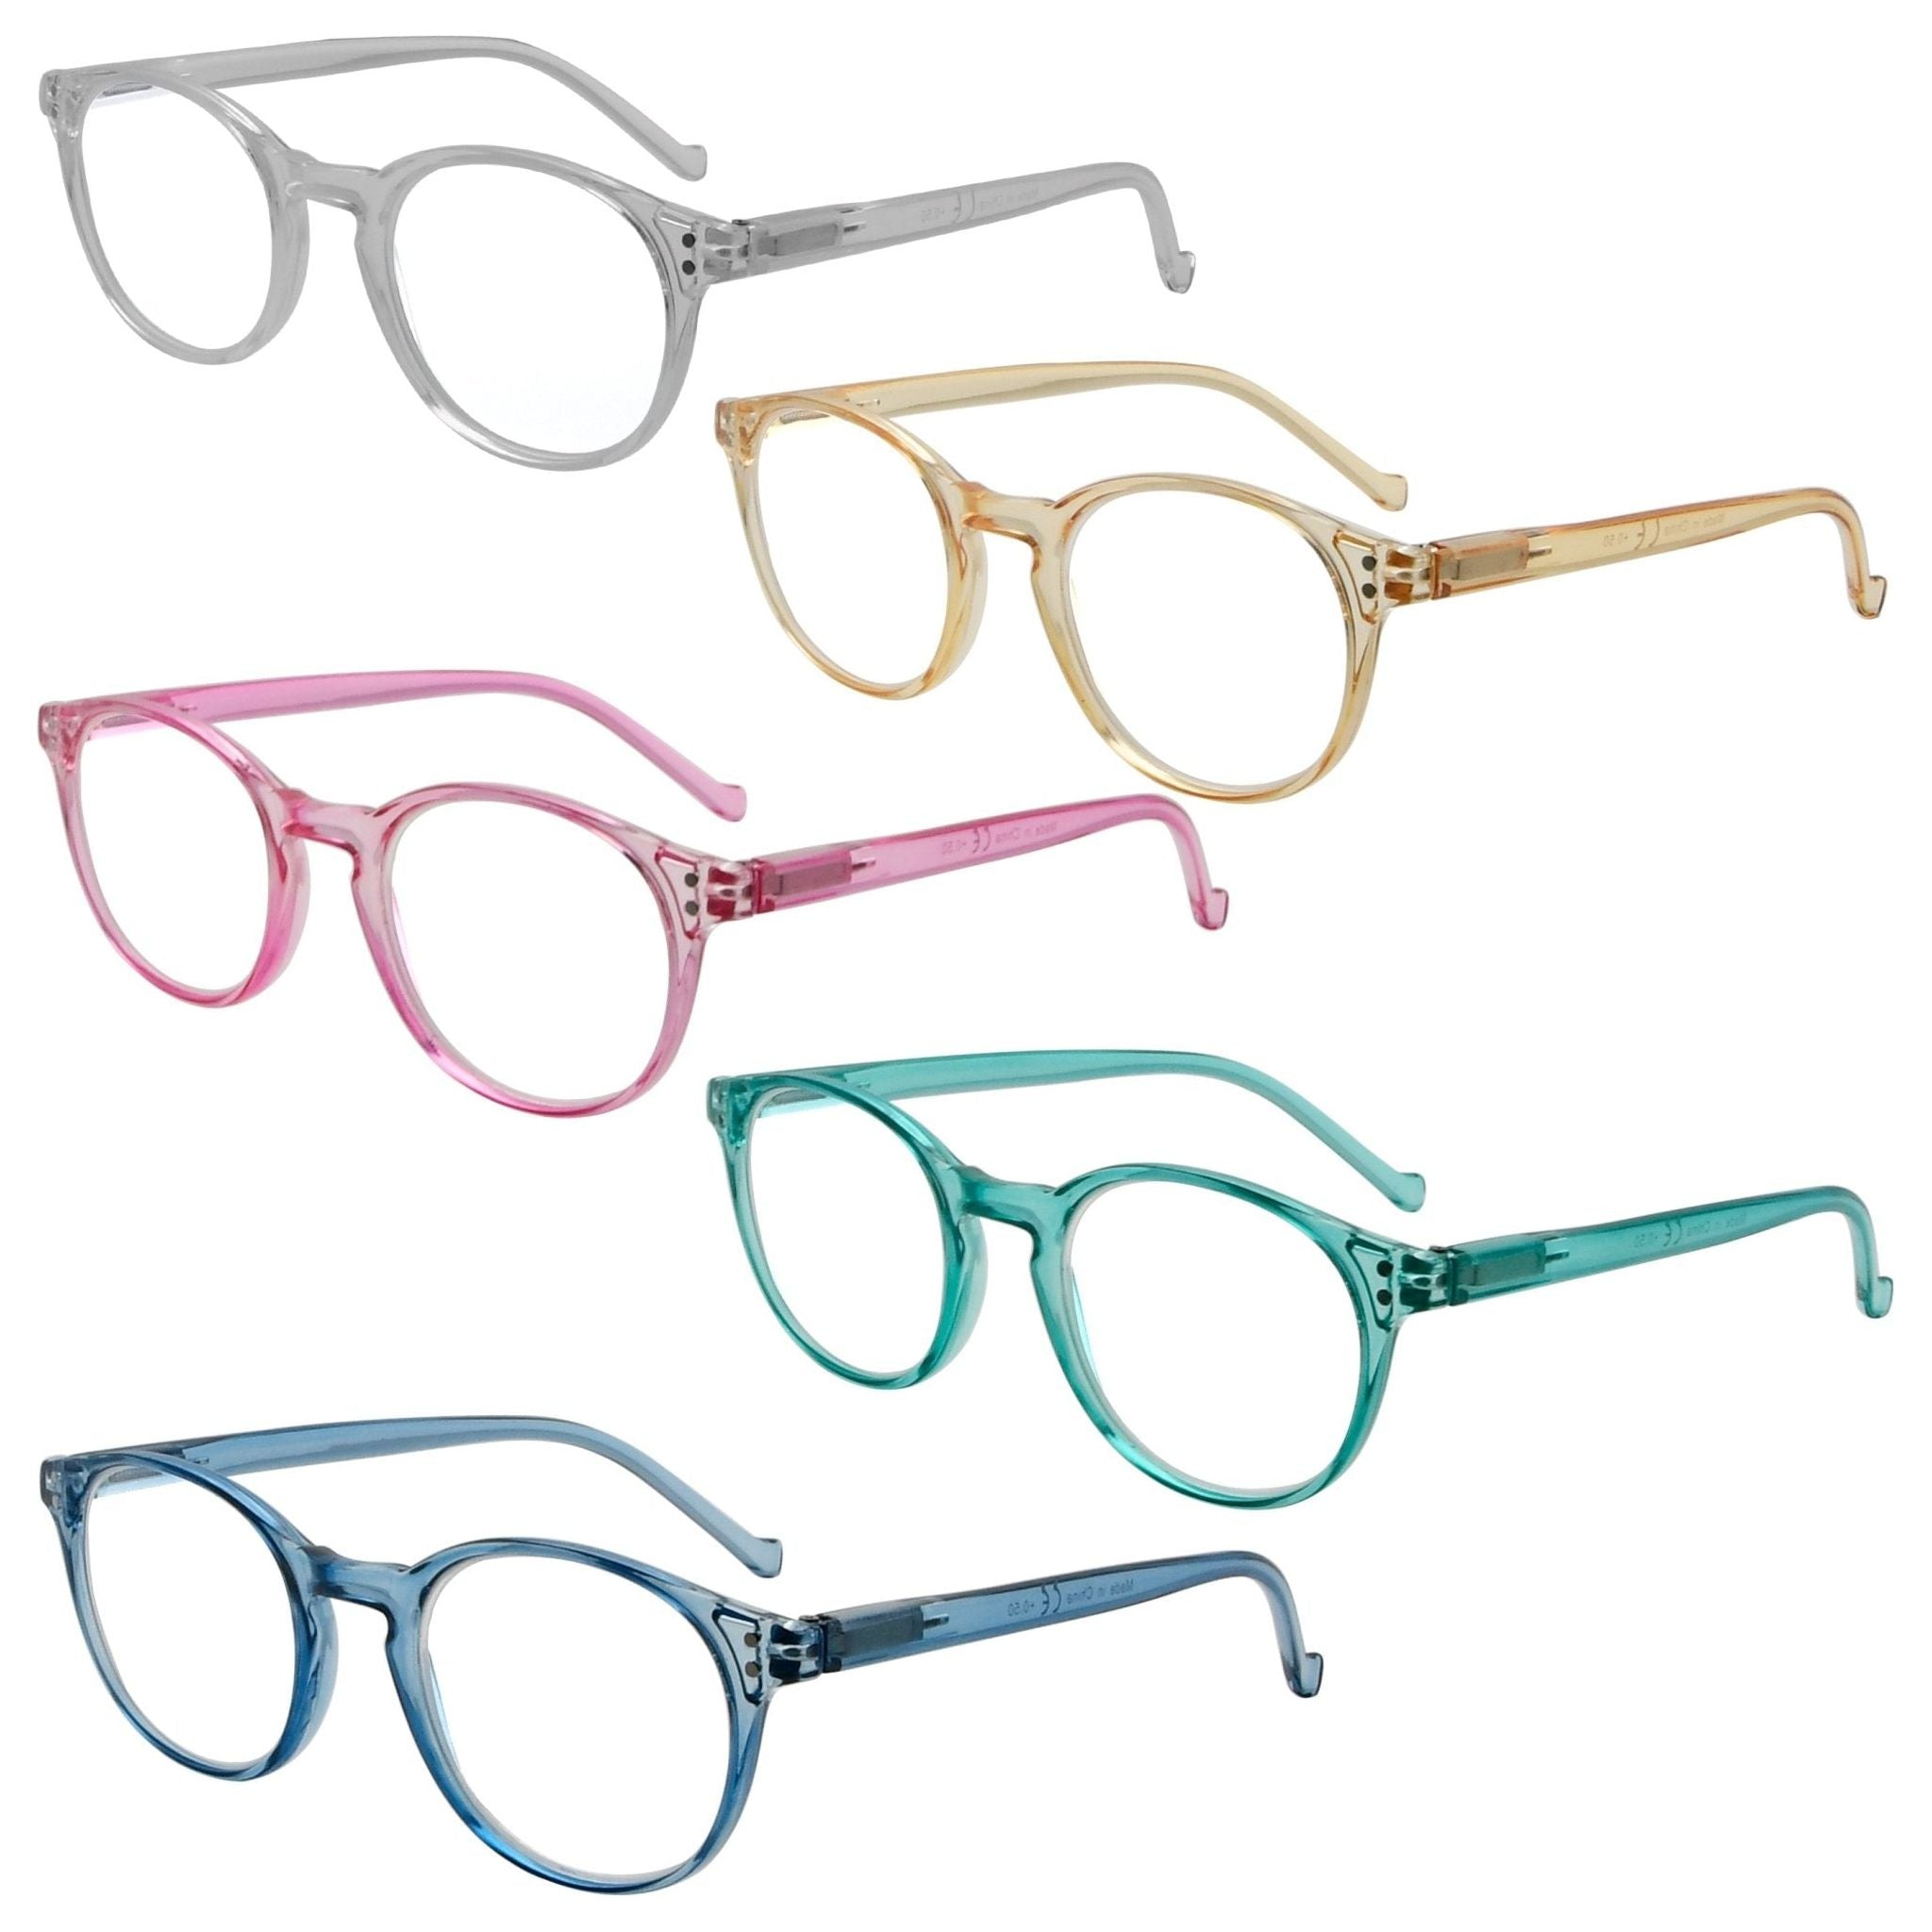 Eyekeeper - 5 Pack Elegant Reading Glasses Round Readers R9115C